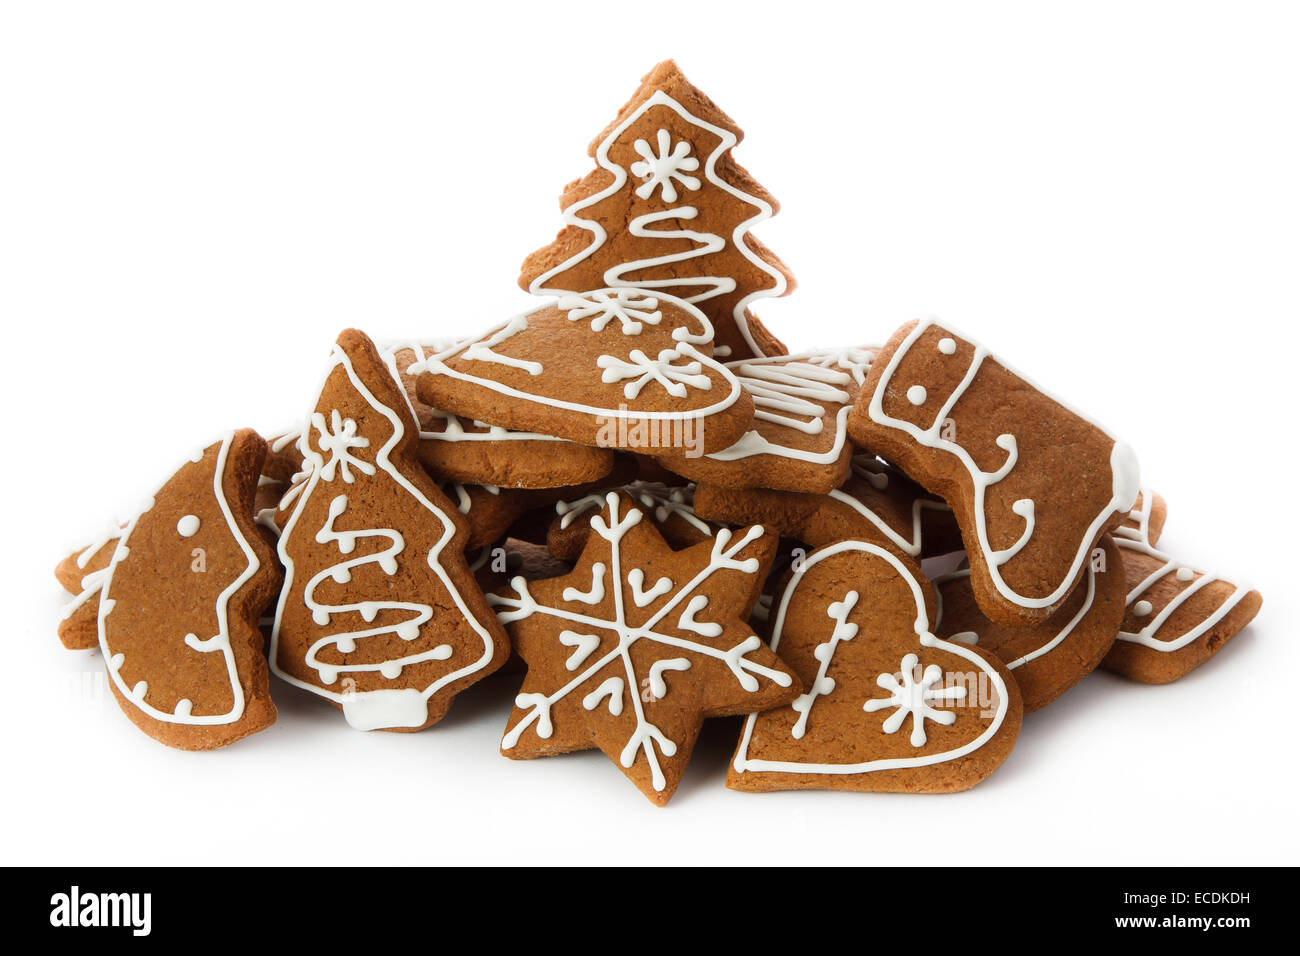 Hausgemachte Weihnachtskekse - Lebkuchen Stockfoto